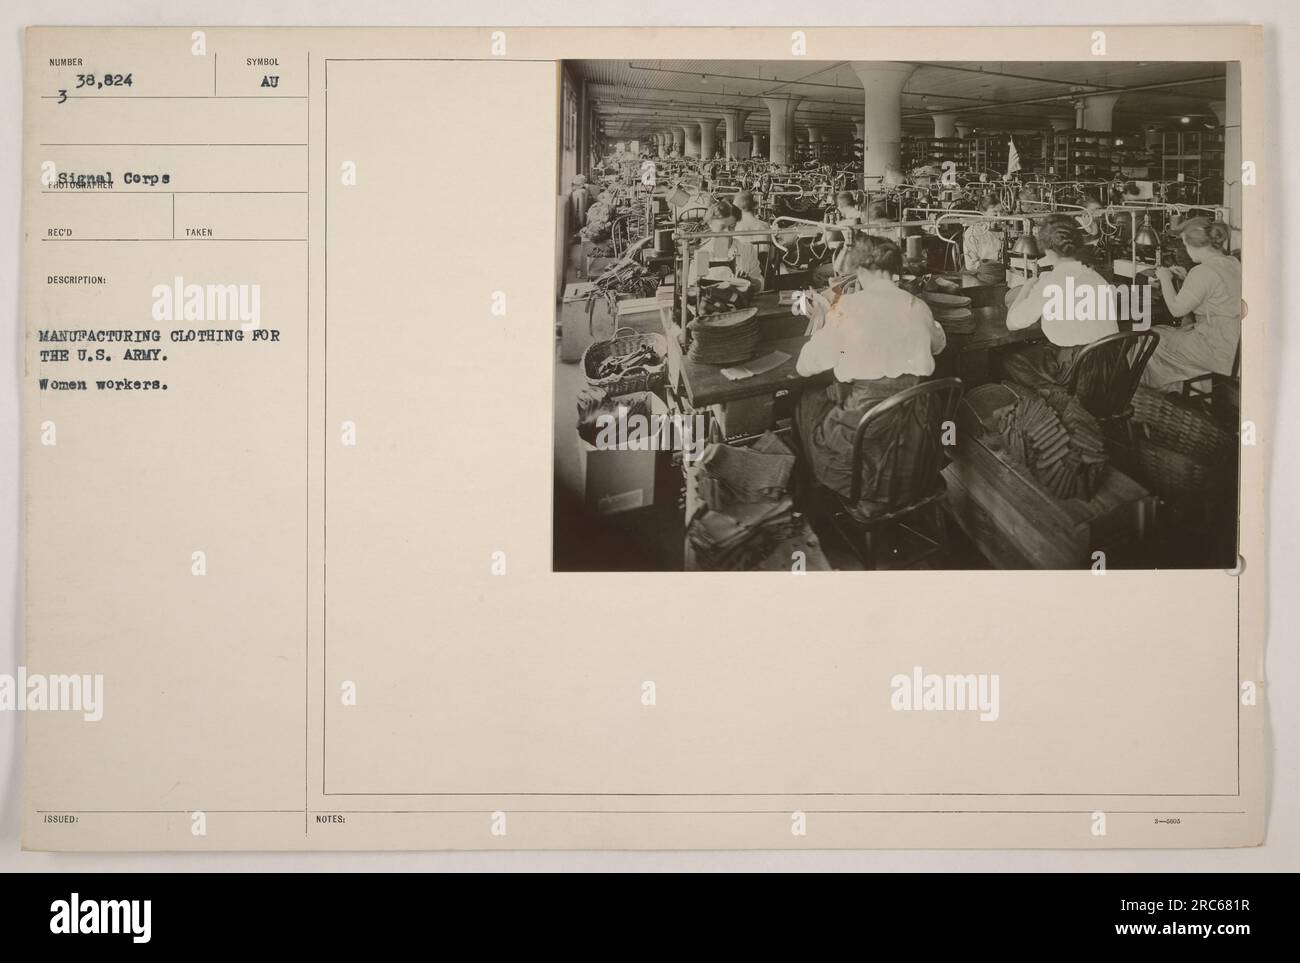 Donne che fabbricano abbigliamento per gli Stati Uniti Esercito durante la prima guerra mondiale. Immagine scattata dal fotografo dei Signal Corps Sunder. Immagine numero 111-SC-38824. Foto Stock